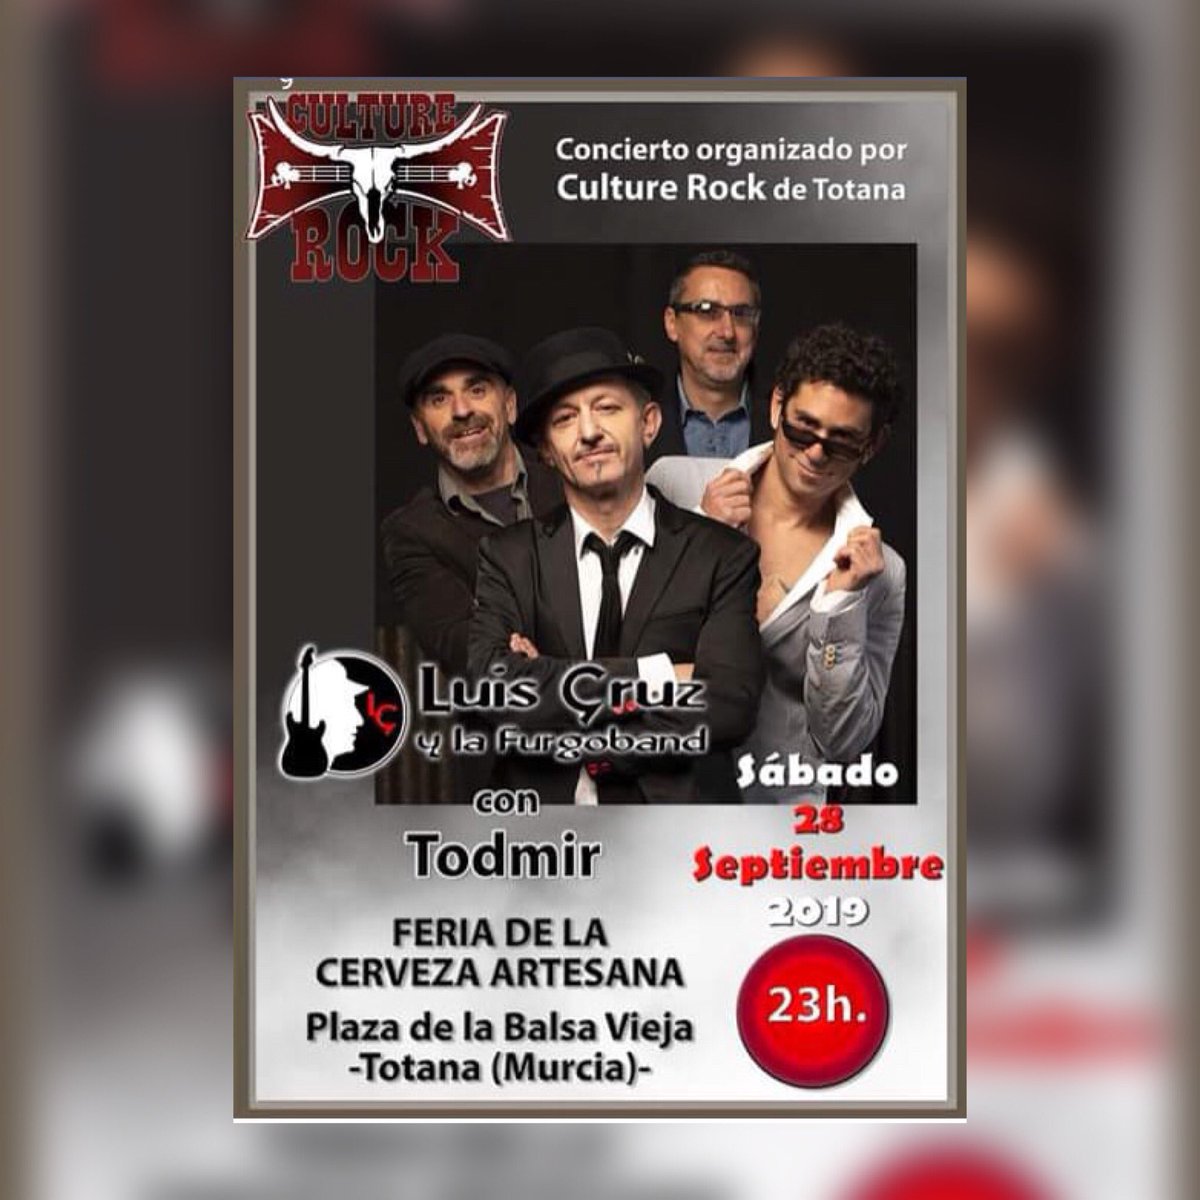 El próximo sábado 28 de septiembre tendré el honor de tocar con Luis Cruz y la Furgoband en la plaza de la Balsa de Vieja en Totana, Murcia, a las 23:00. Si les viene bien, acérquense. #luiscruz #furgoband #rockendirecto #milmanerasdevolveralhotel #culturerock